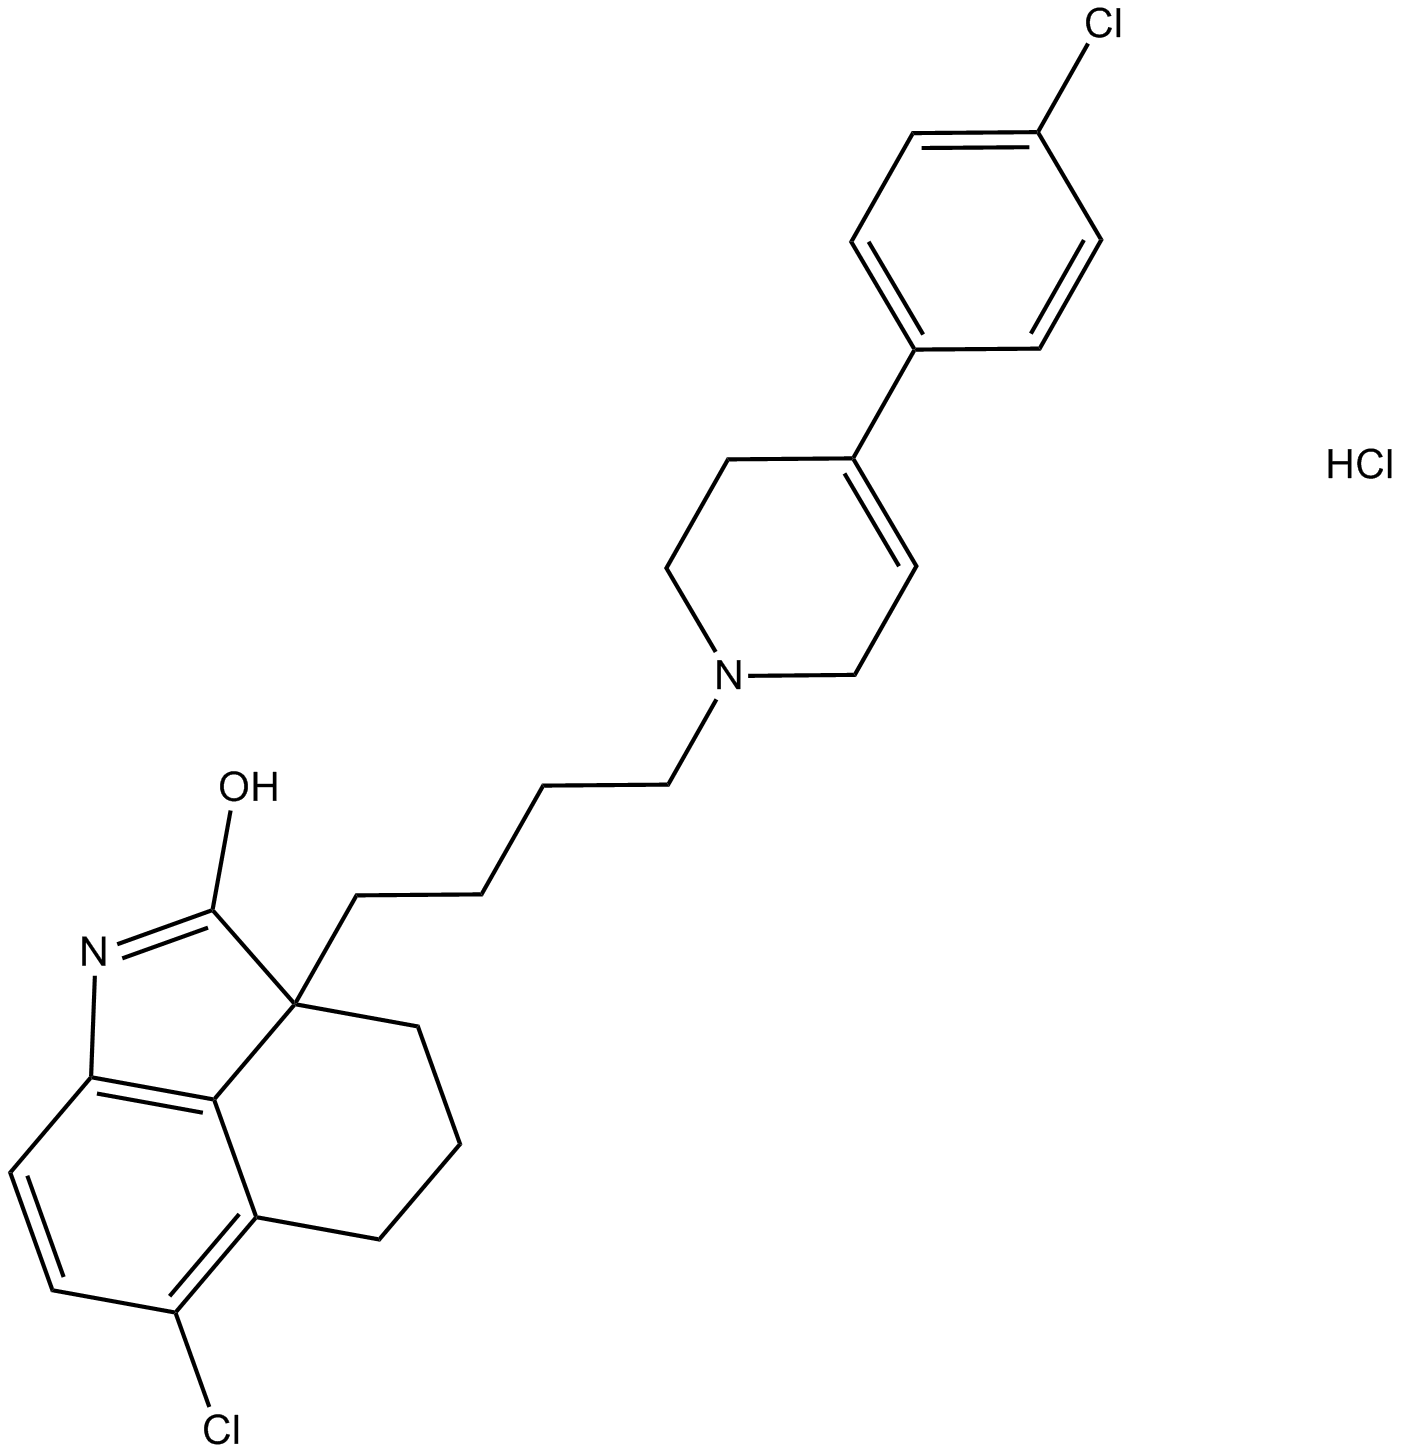 DR 4485 hydrochloride